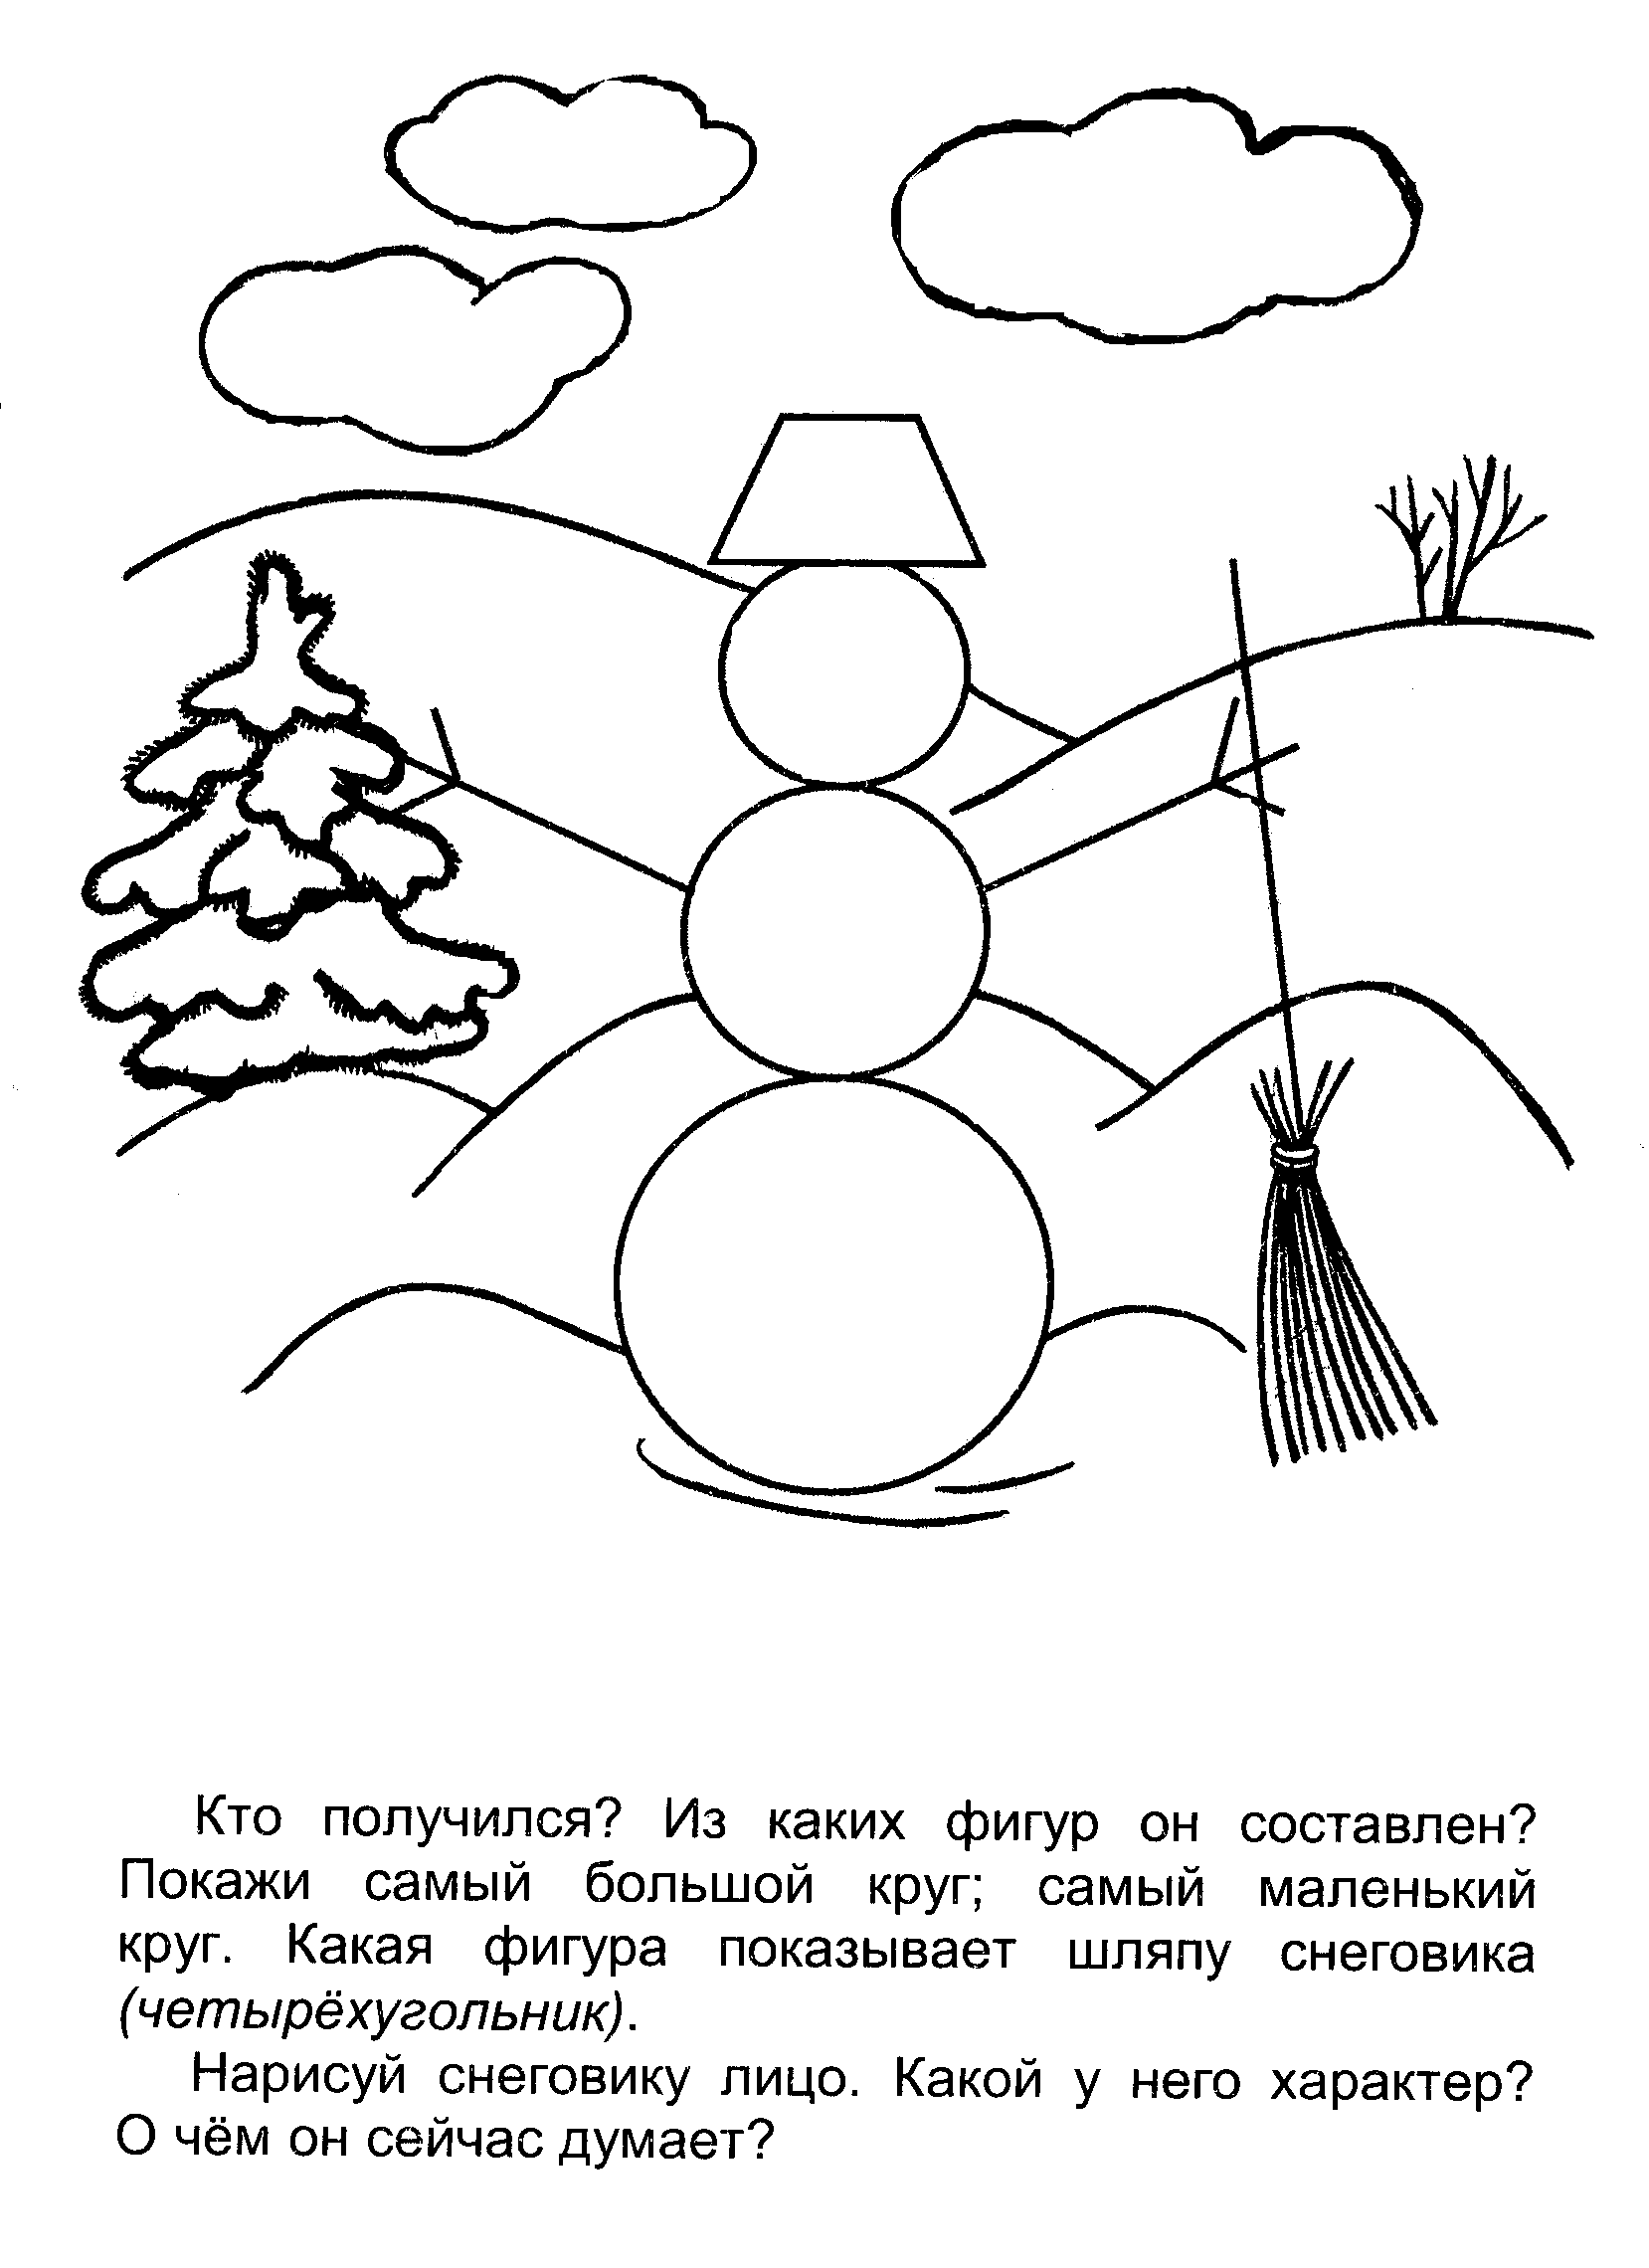 Розмальовки фігур сніговик з геометричних фігур